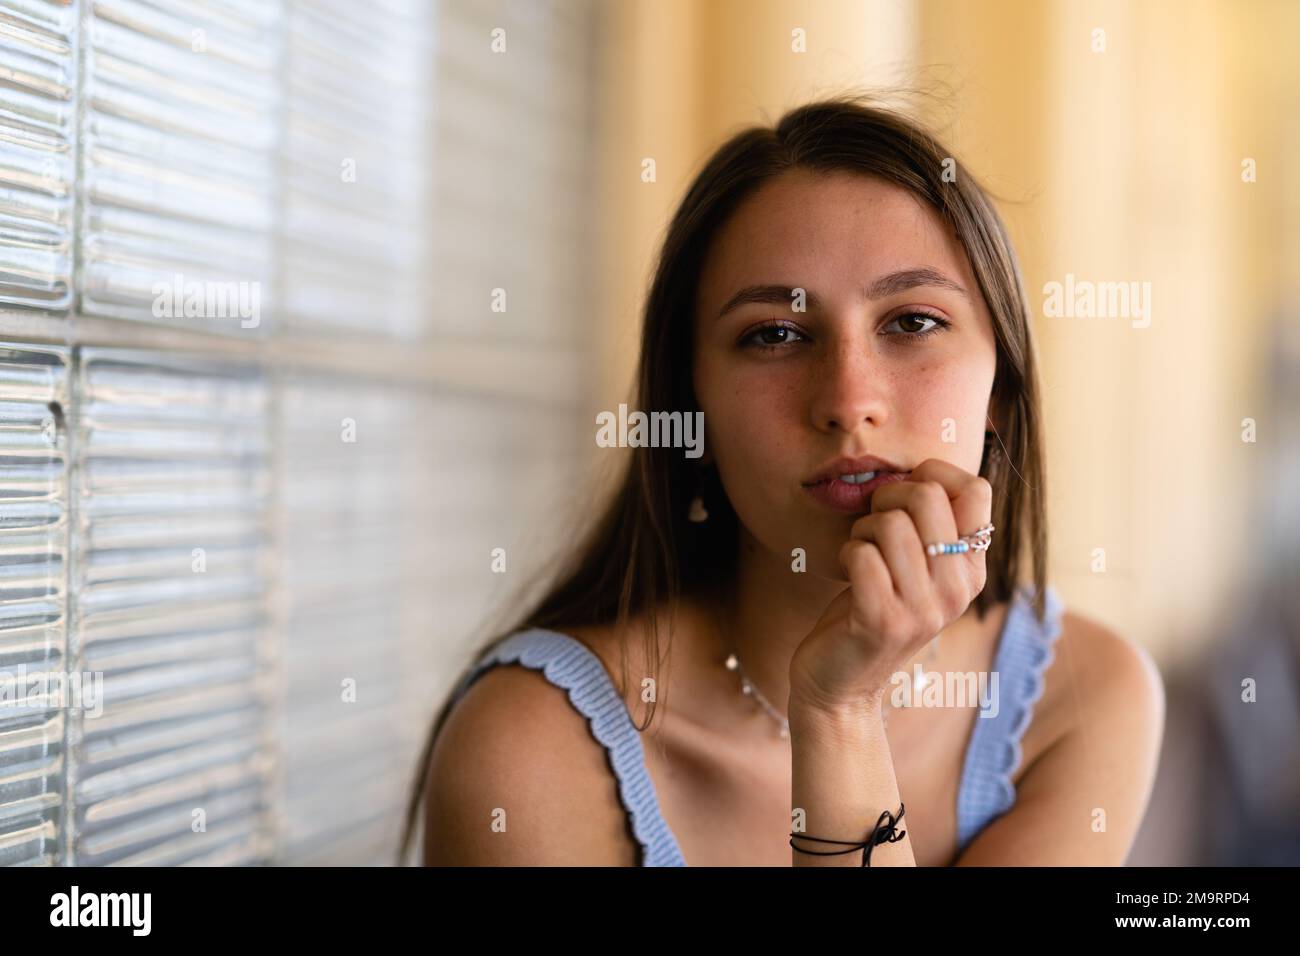 Nahaufnahme Porträt eines modernen Mädchens im Teenageralter mit handgemachtem Schmuck, das an einem Bahnhof wartet Stockfoto